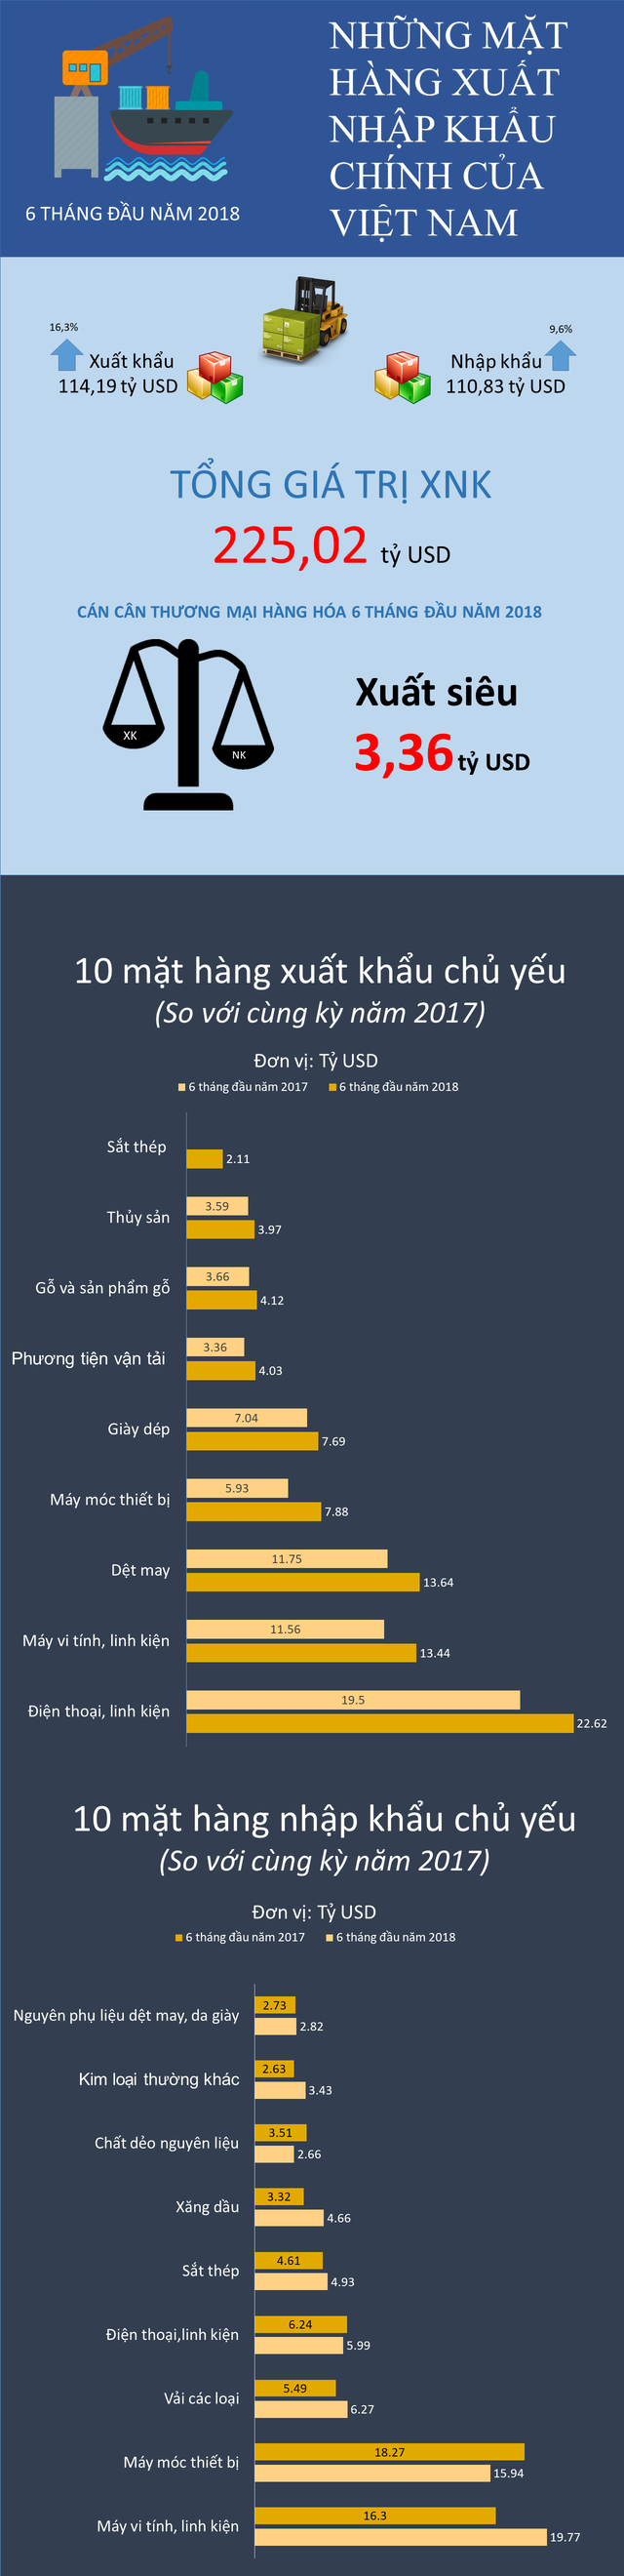 Điểm danh những mặt hàng xuất nhập khẩu chính của Việt Nam trong nửa đầu năm 2018 - Ảnh 1.